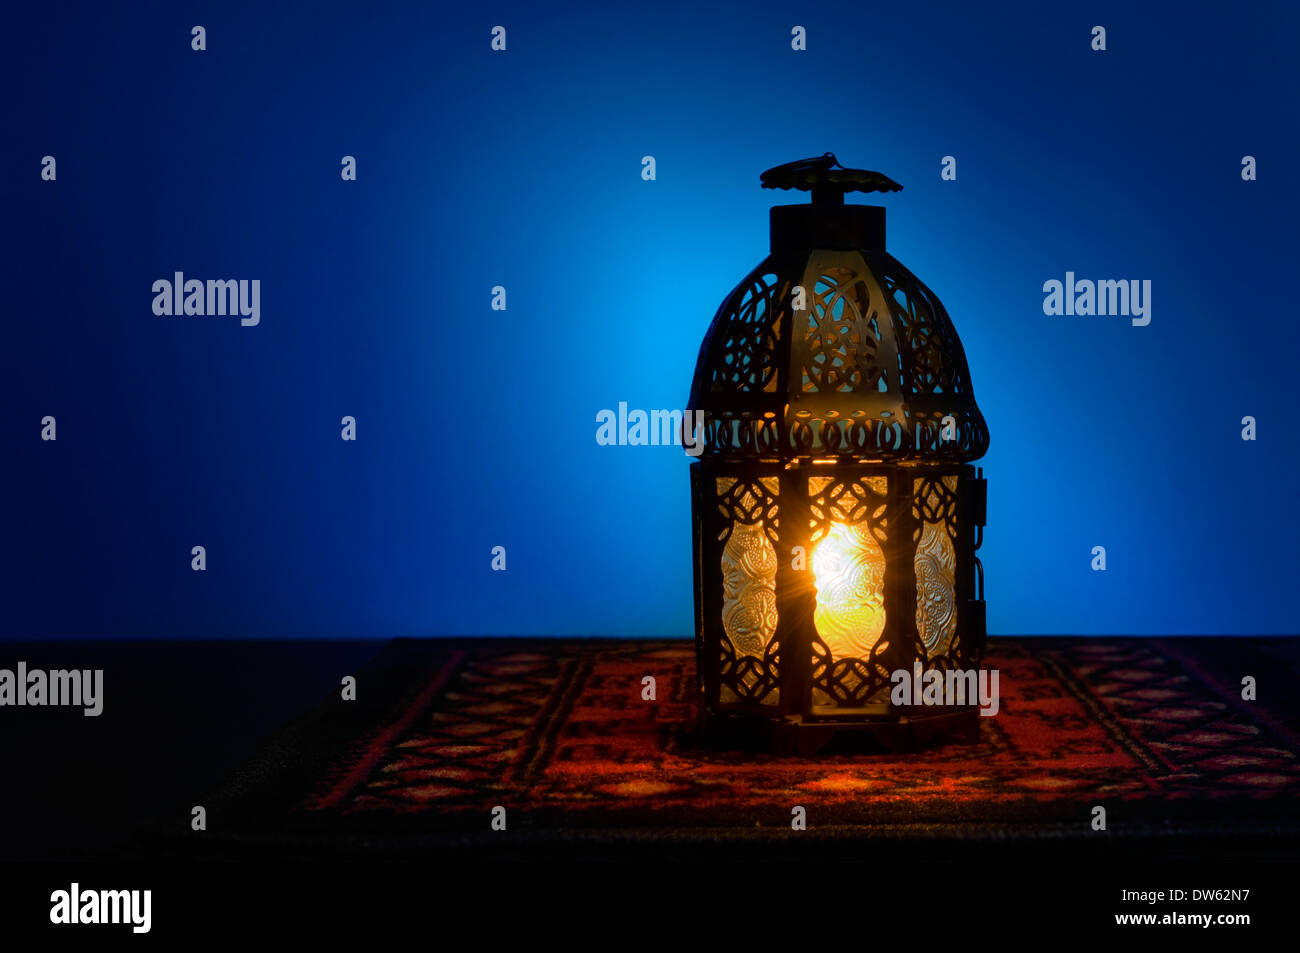 Eine beleuchtete arabische Laterne auf blauem Hintergrund Stockfoto